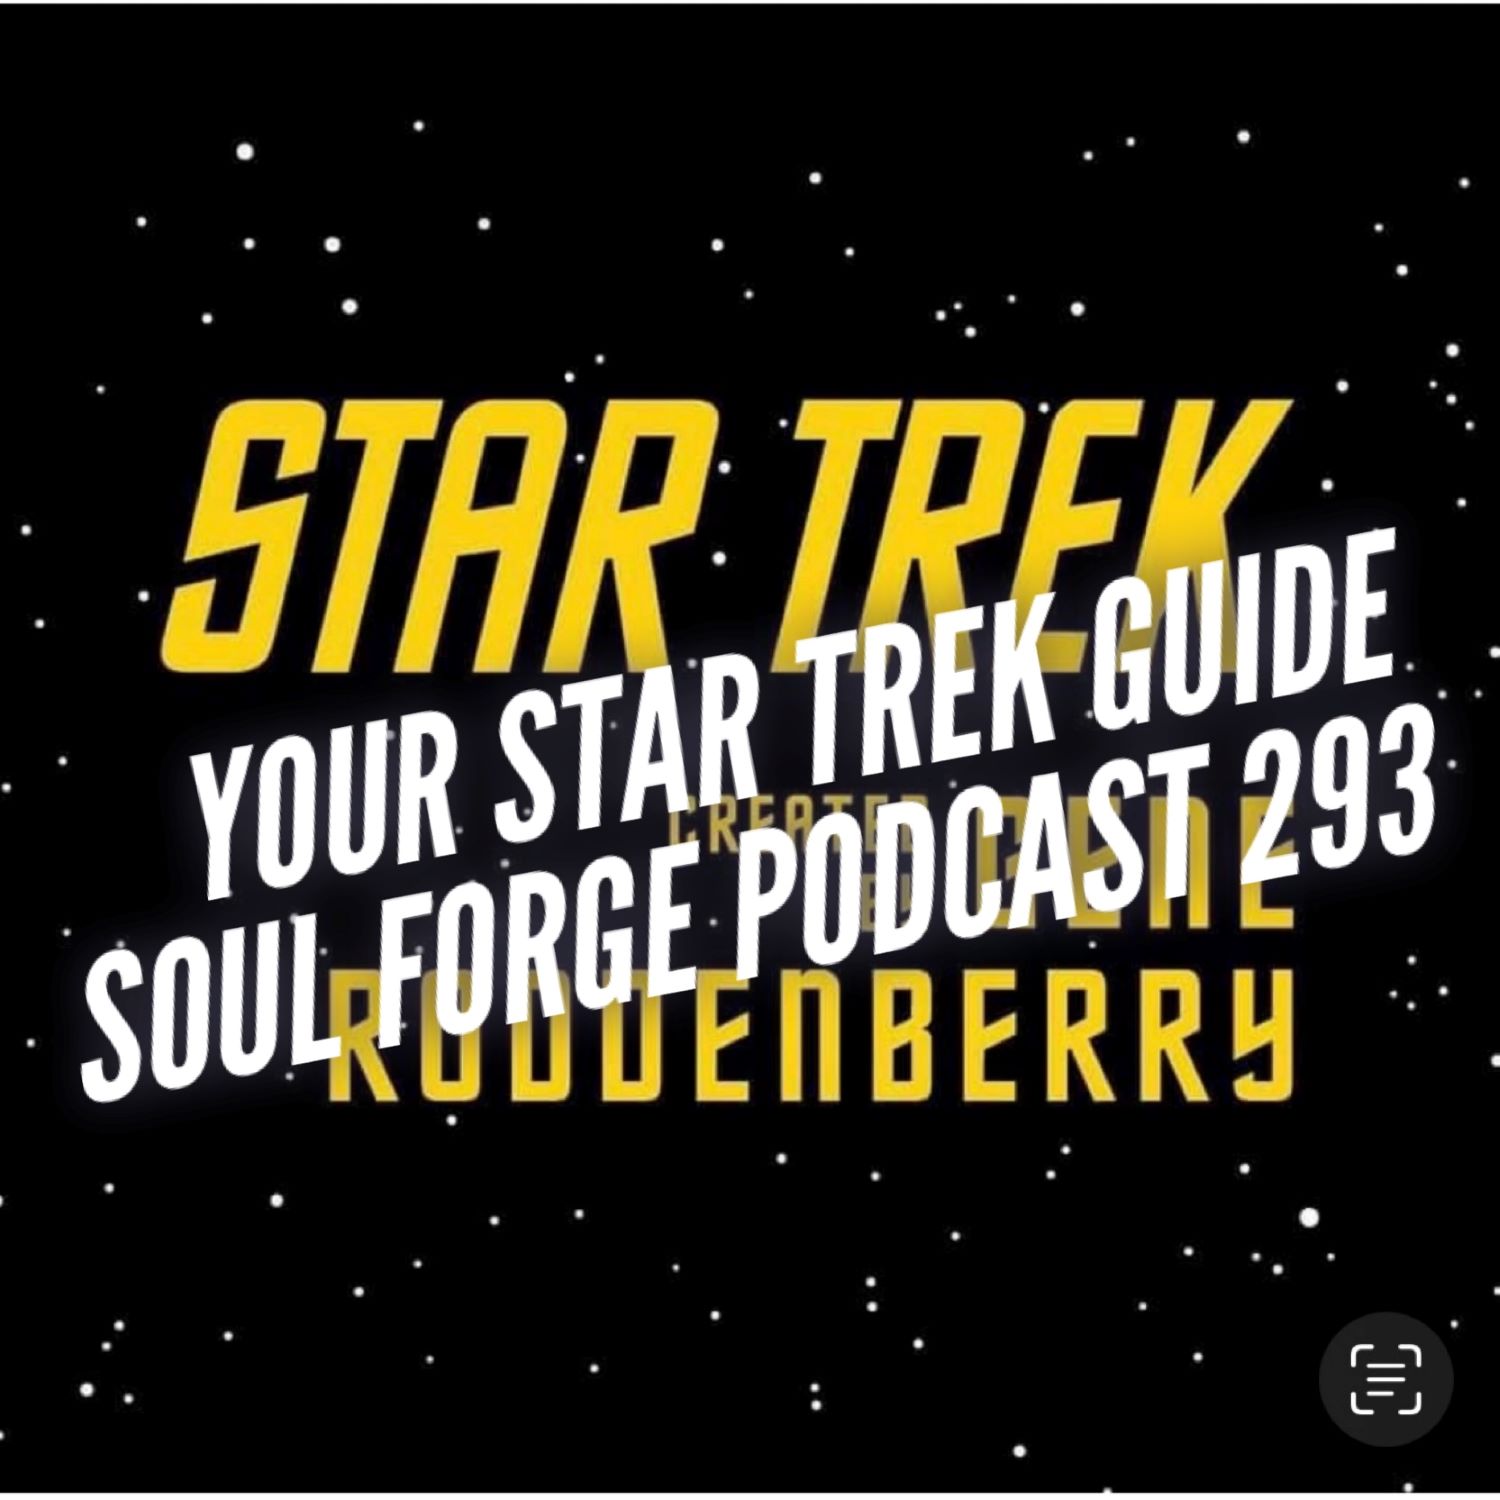 Your Star Trek guide